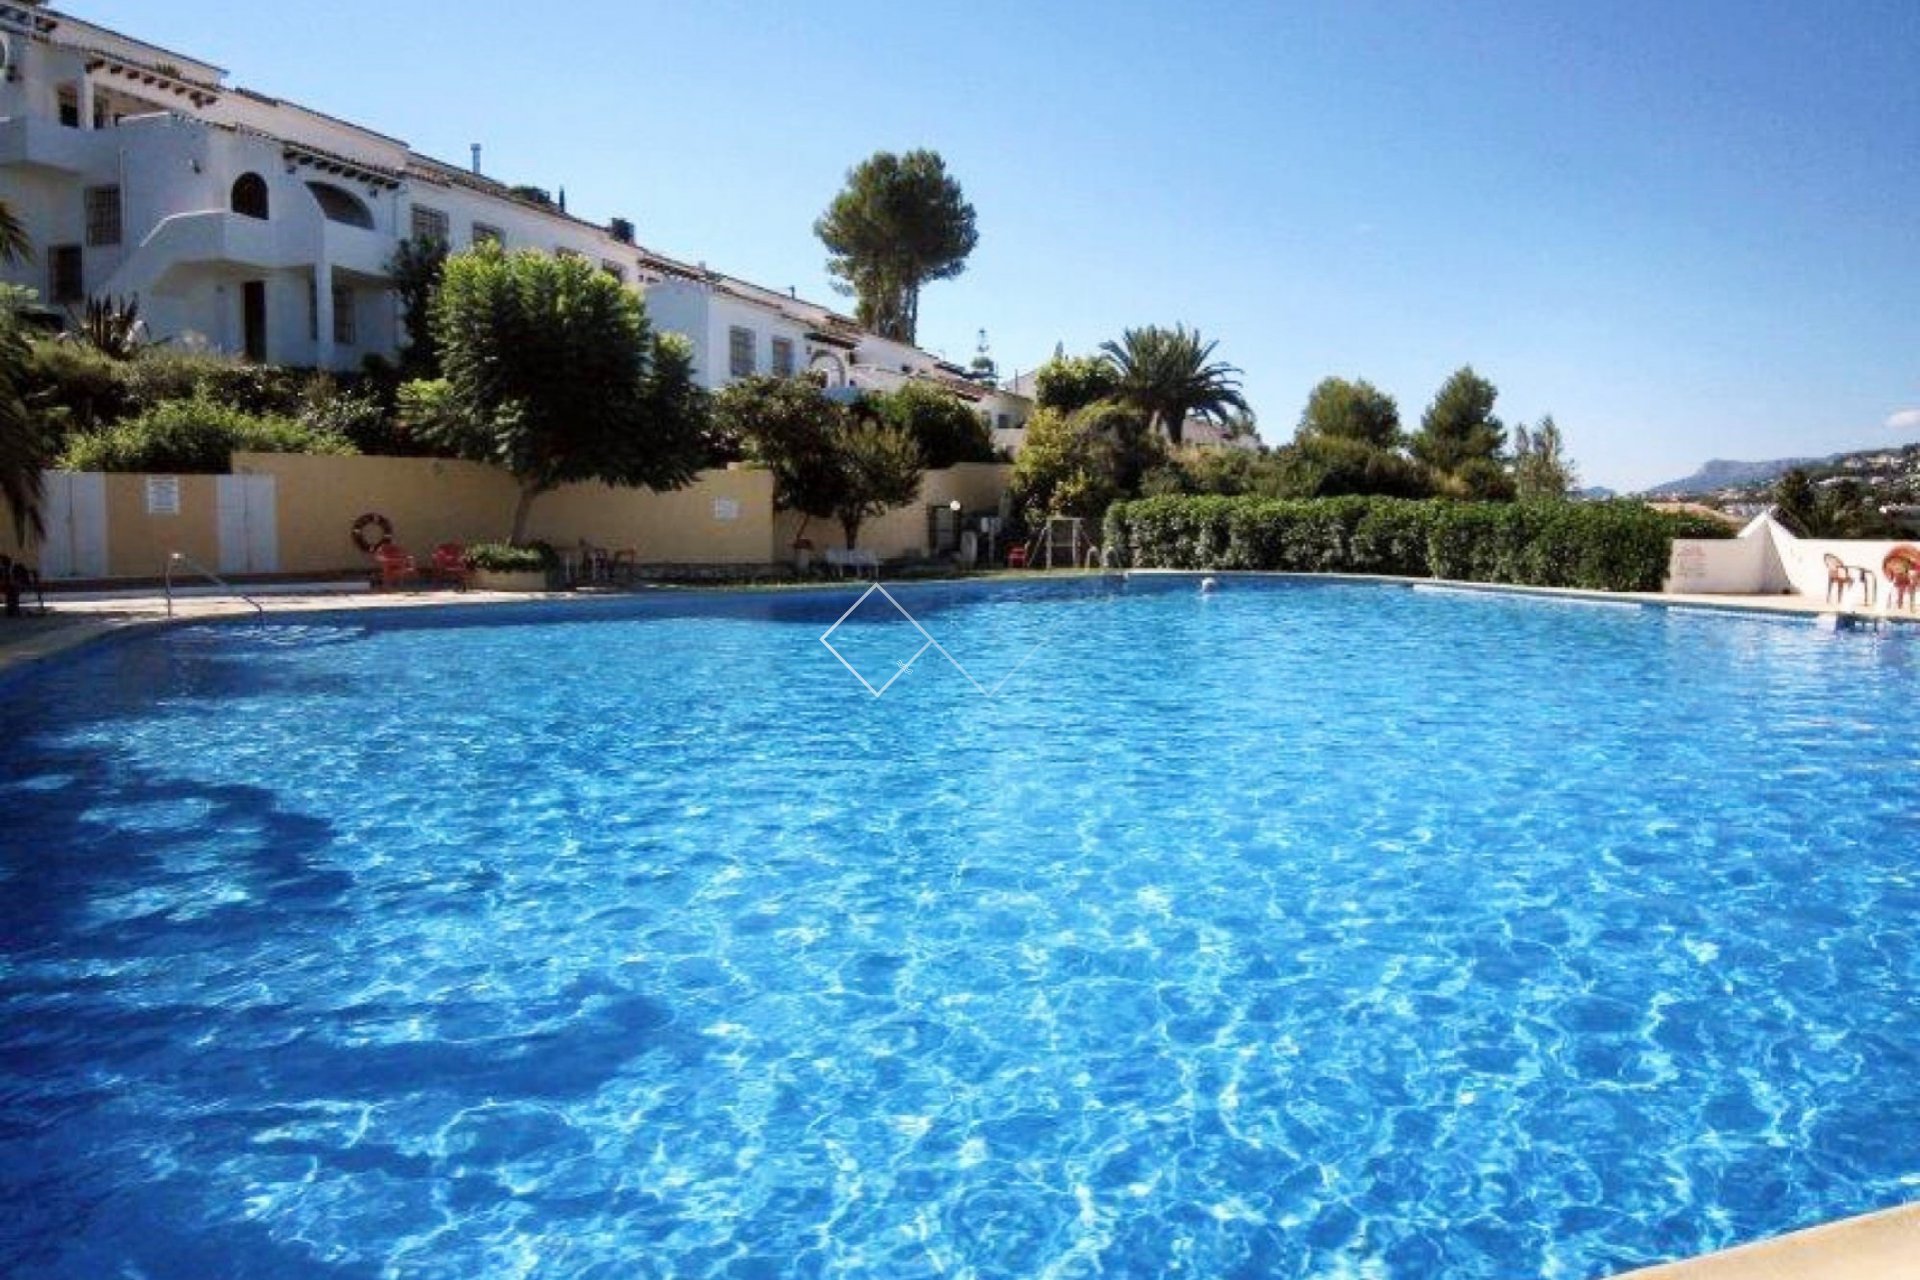 gemeenschappelijk zwembad - Appartement met verhuur licentie te koop in Villotel, Moraira